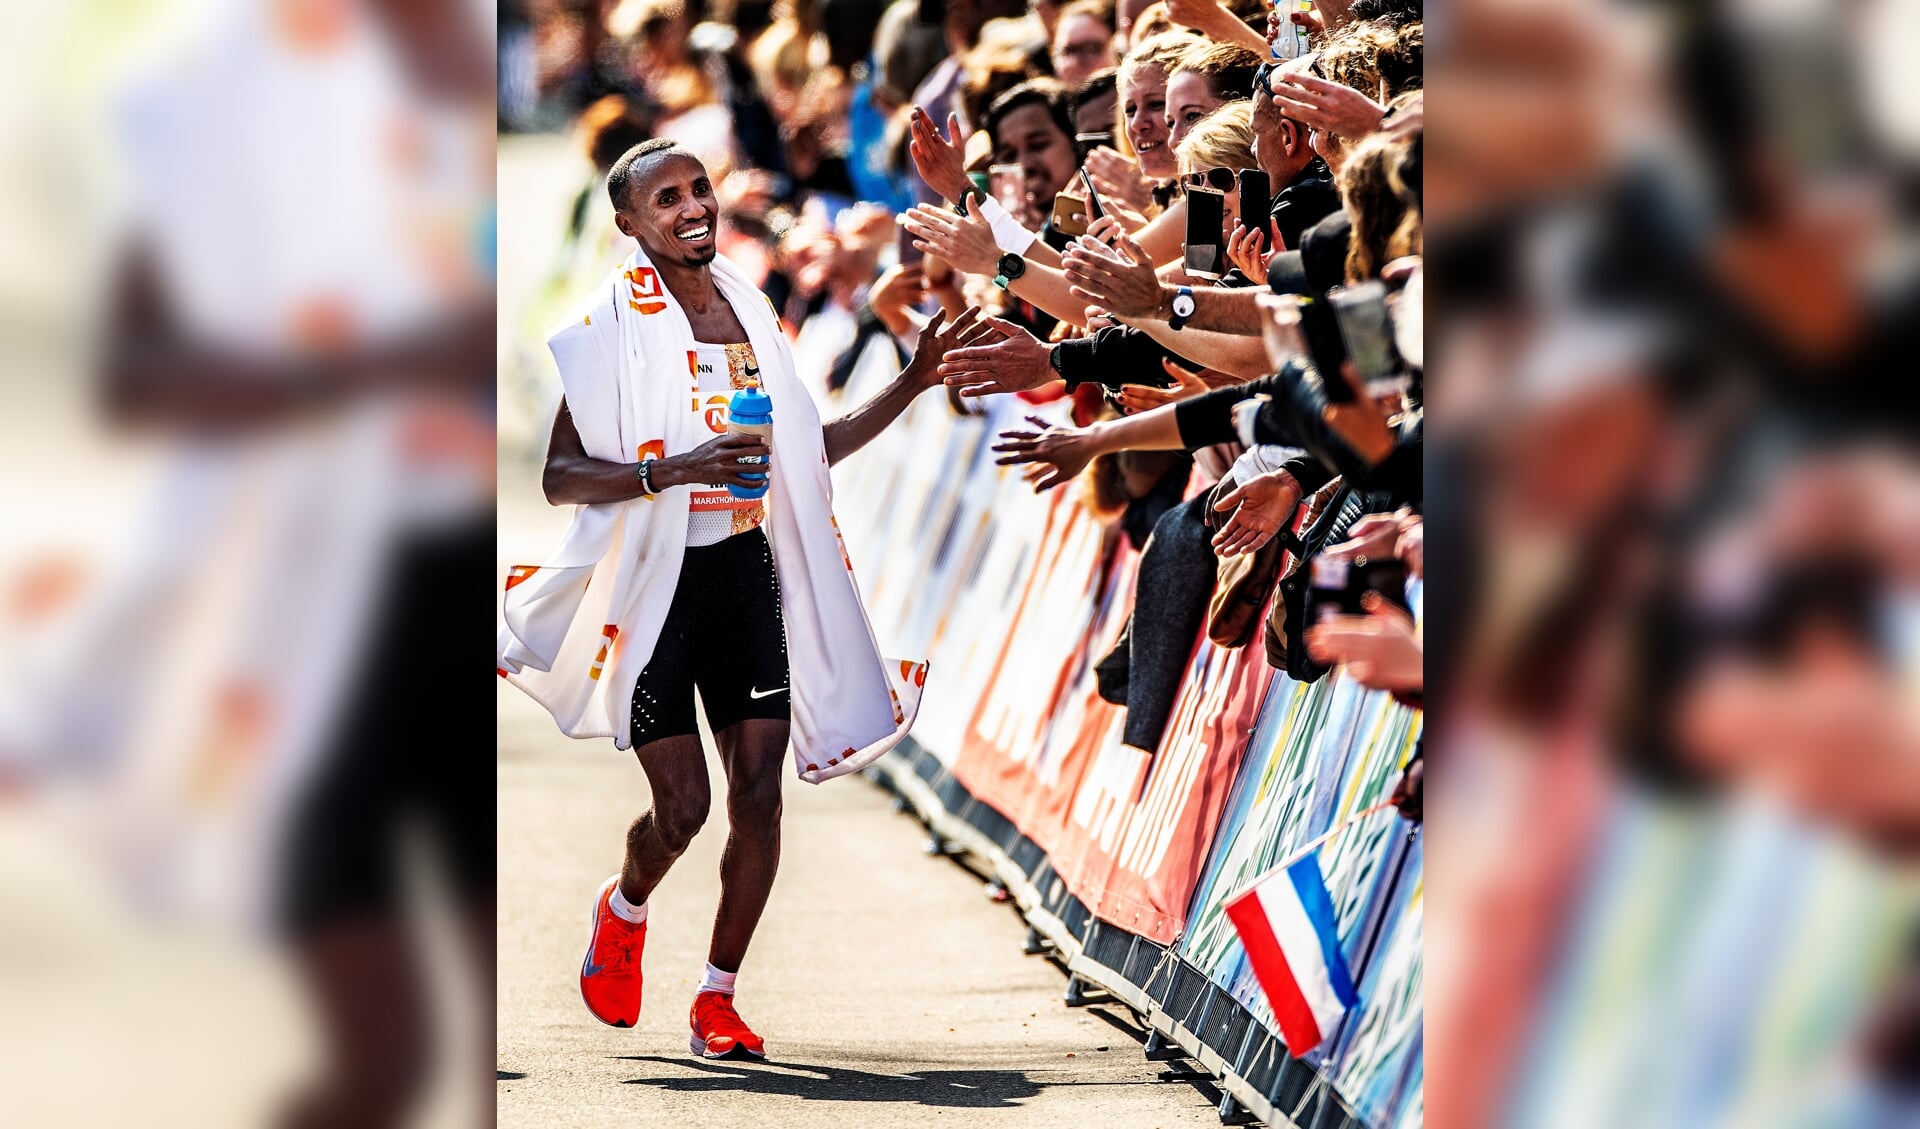 Het parcours uitlopen mogen de deelnemers aan de 50 kilometer Ultra Run hoe dan ook. Maar hoe lang kunnen zij Abdi Nageeye - winnaar van Olympisch zilver op de marathon -  voorblijven? (Foto: Pim Ras)